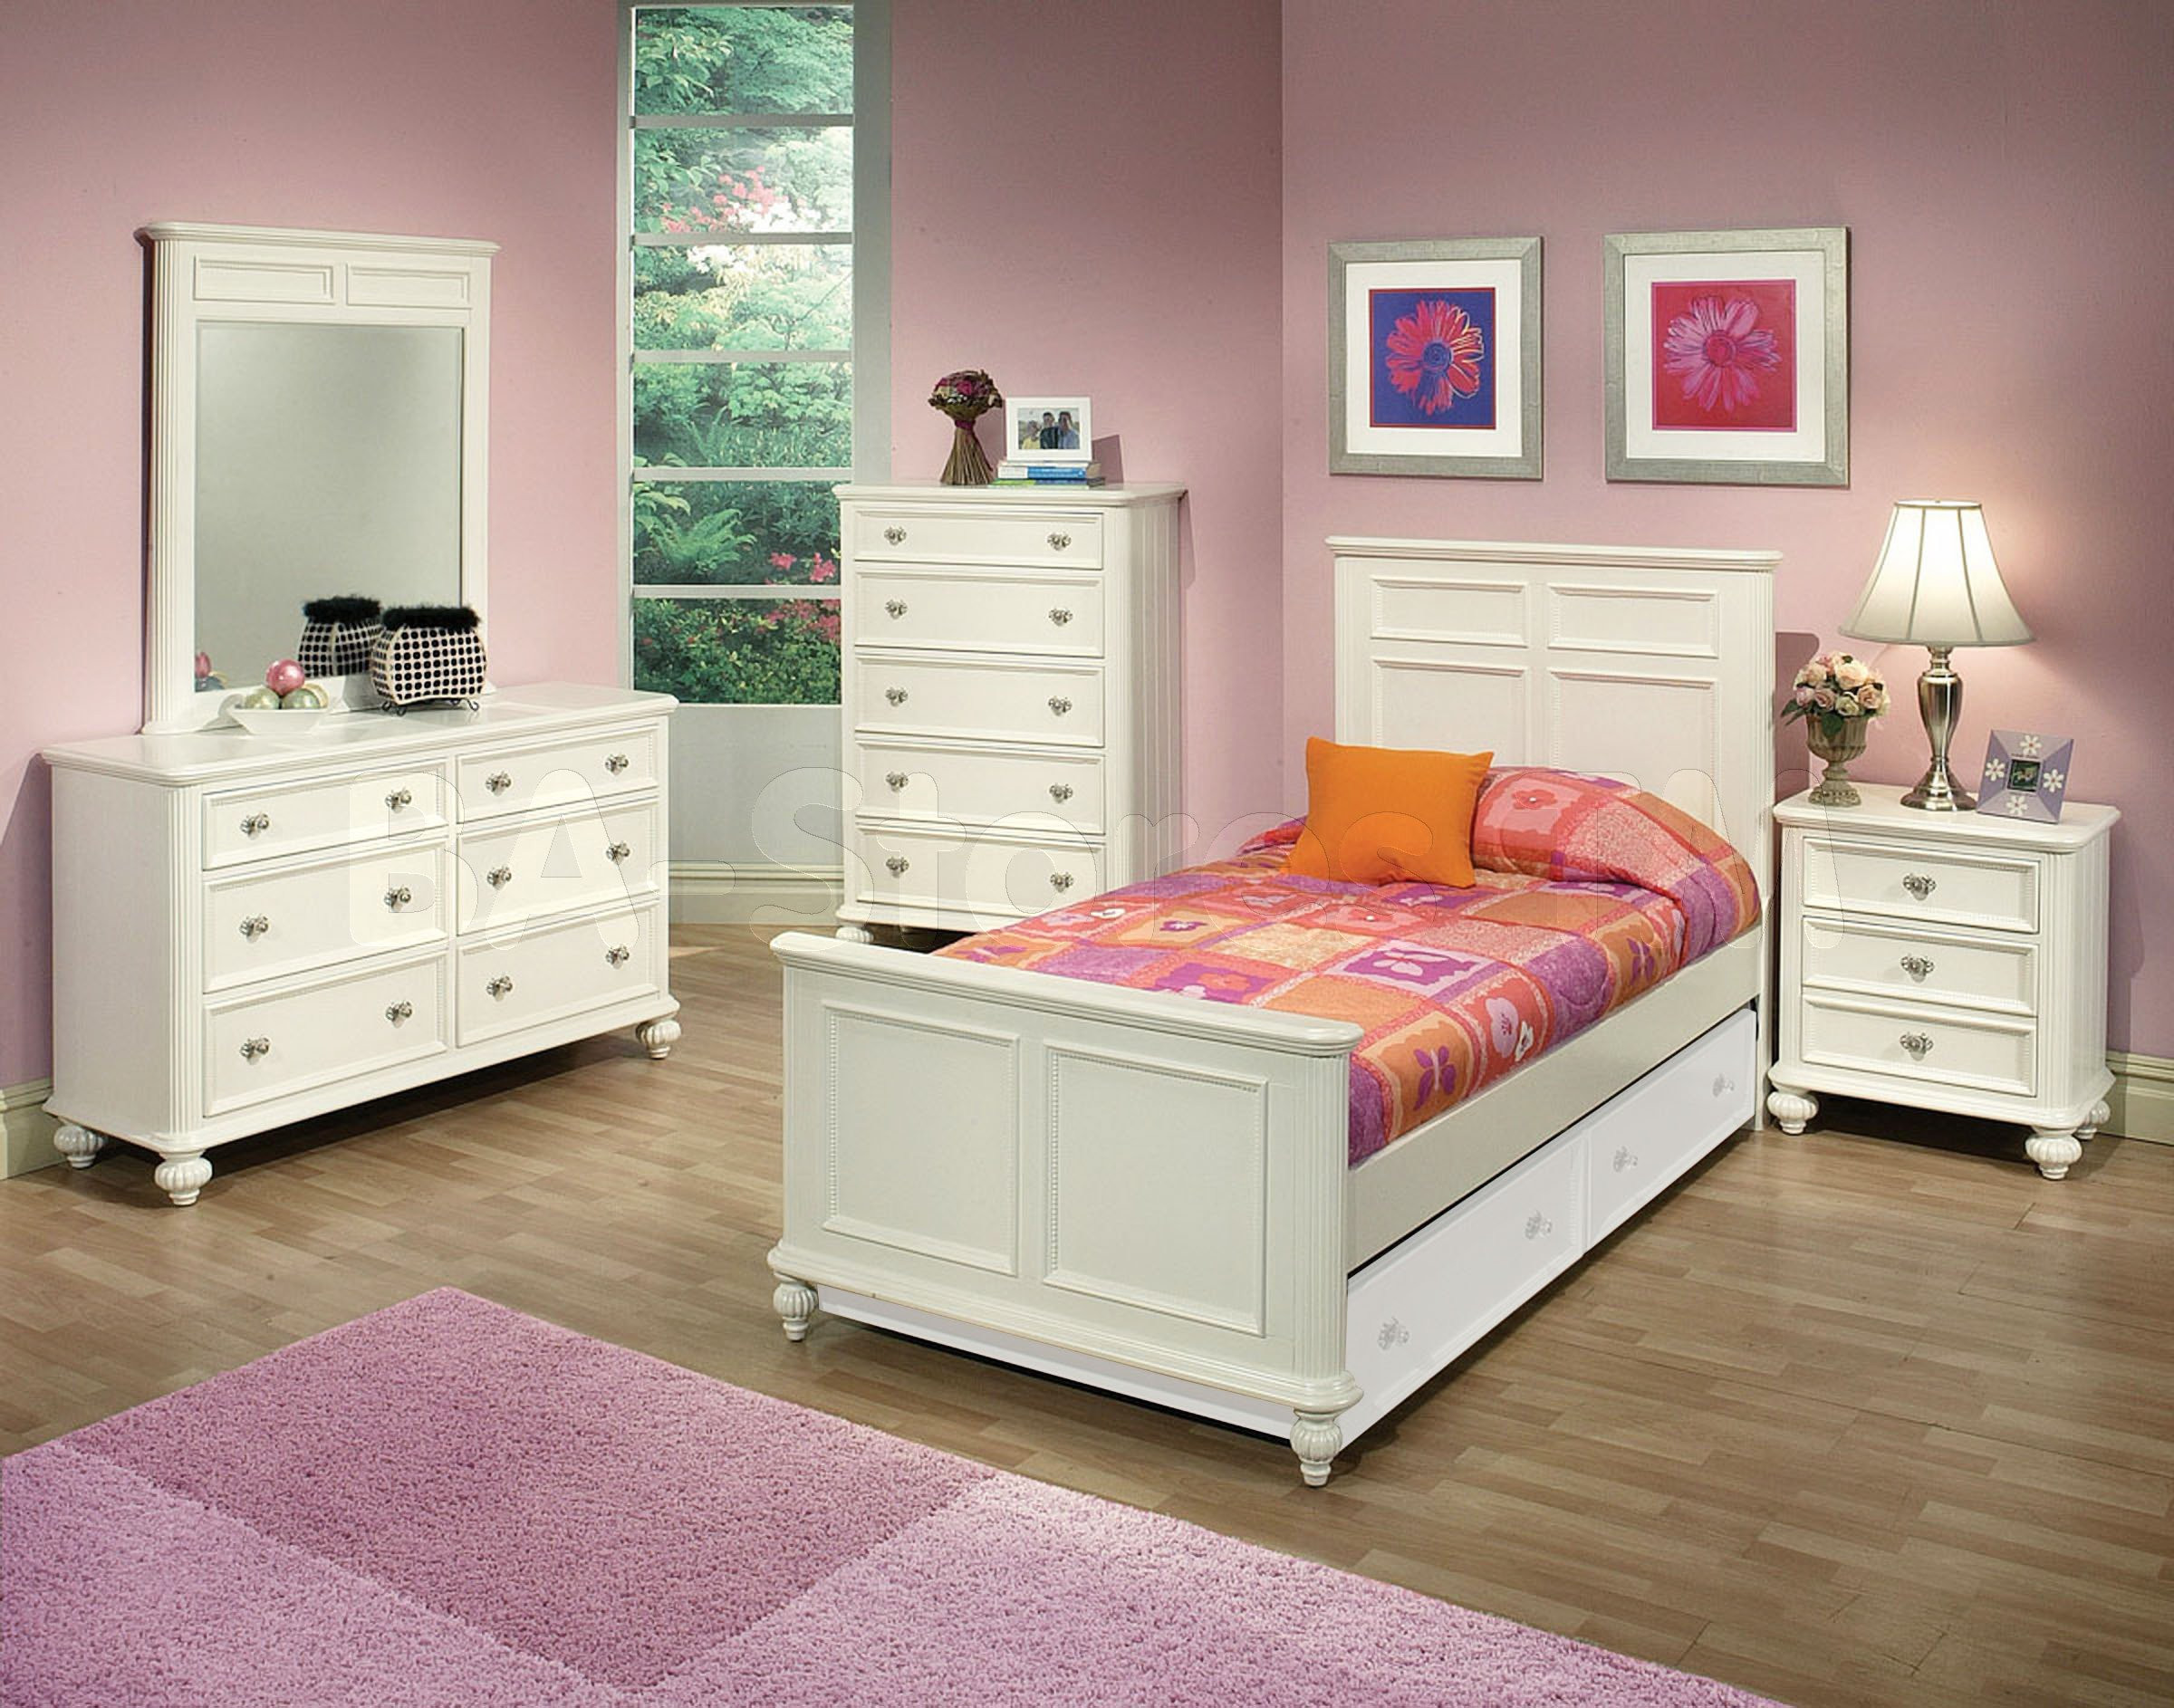 Kids Bedroom Furniture Sets
 Solid wood bedroom furniture for kids 20 tips for best